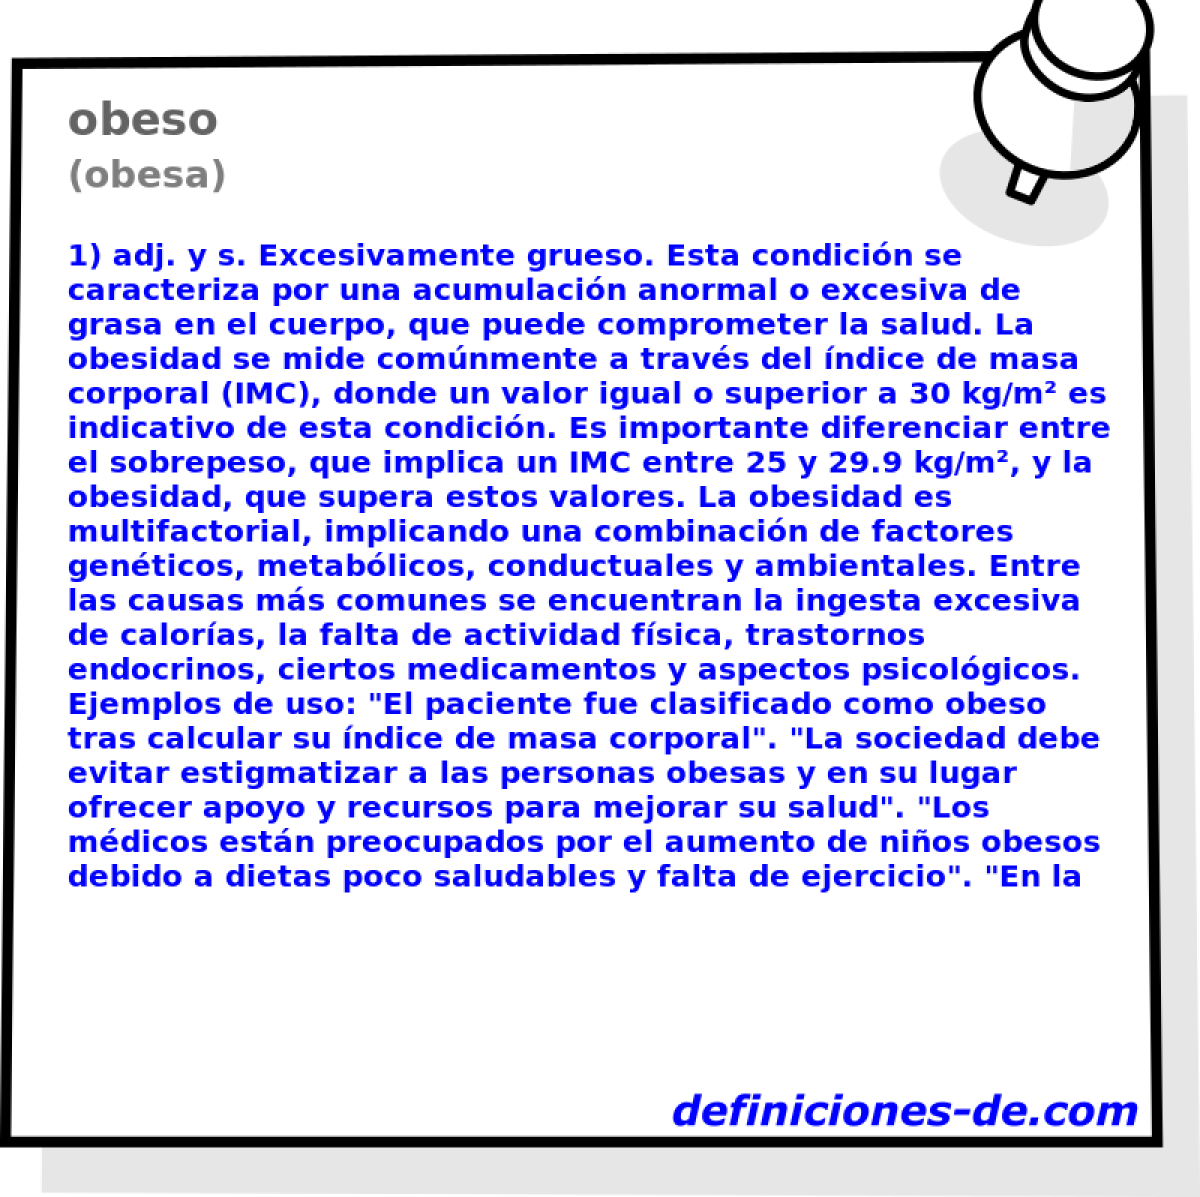 obeso (obesa)